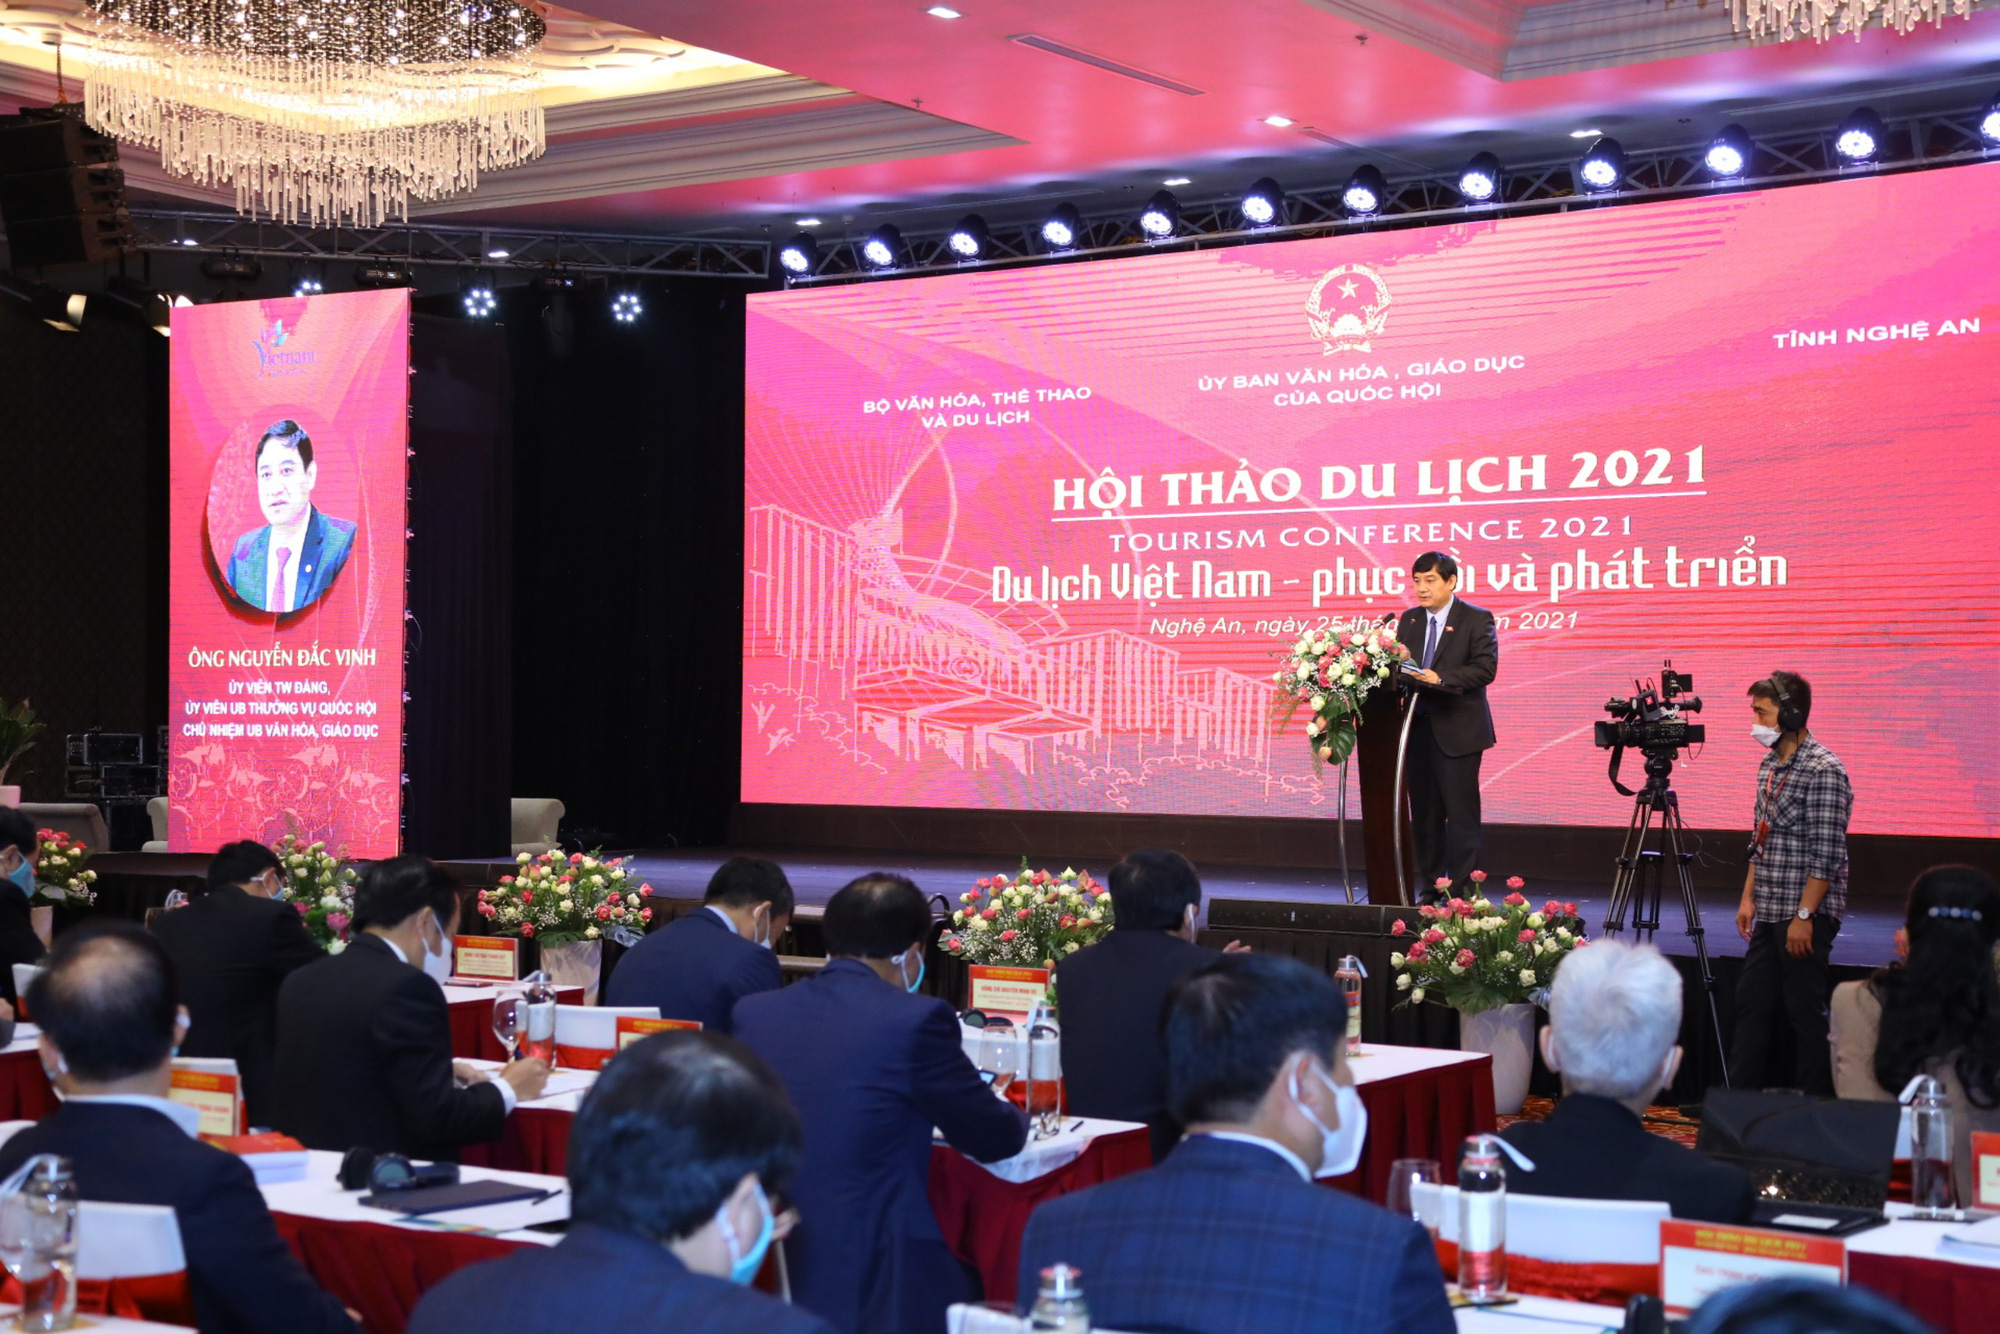 Thứ trưởng Bộ VHTTDL nêu 5 giải pháp để du lịch Việt Nam phục hồi và phát triển - Ảnh 2.